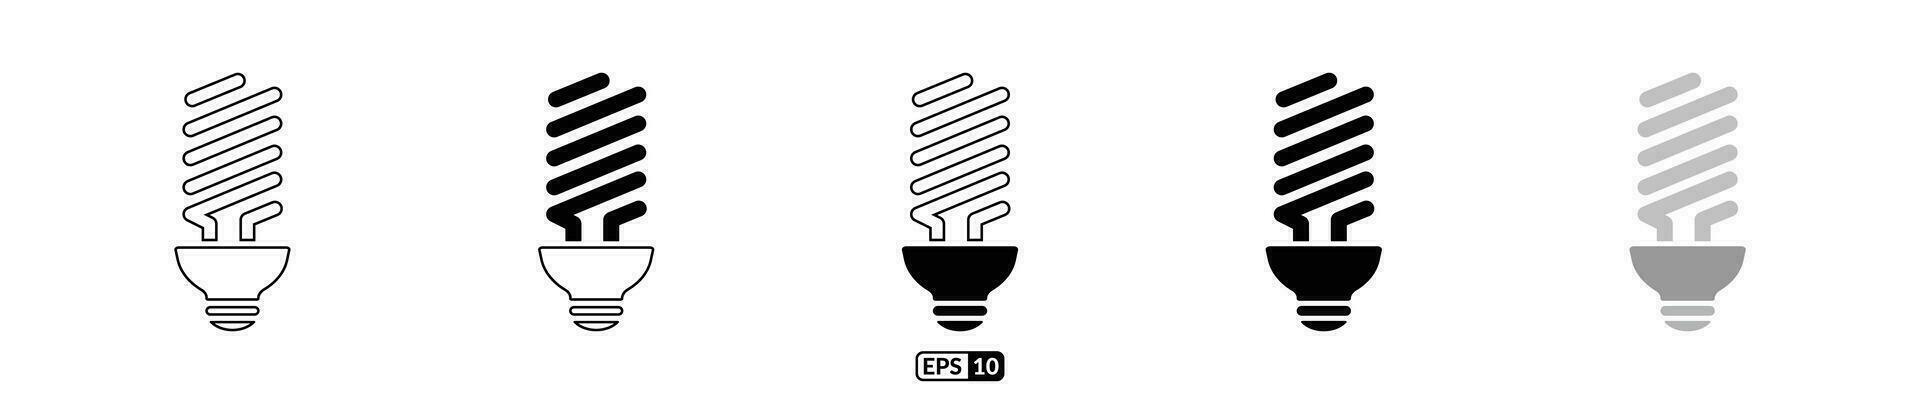 Led bulb icon set eps10 vector